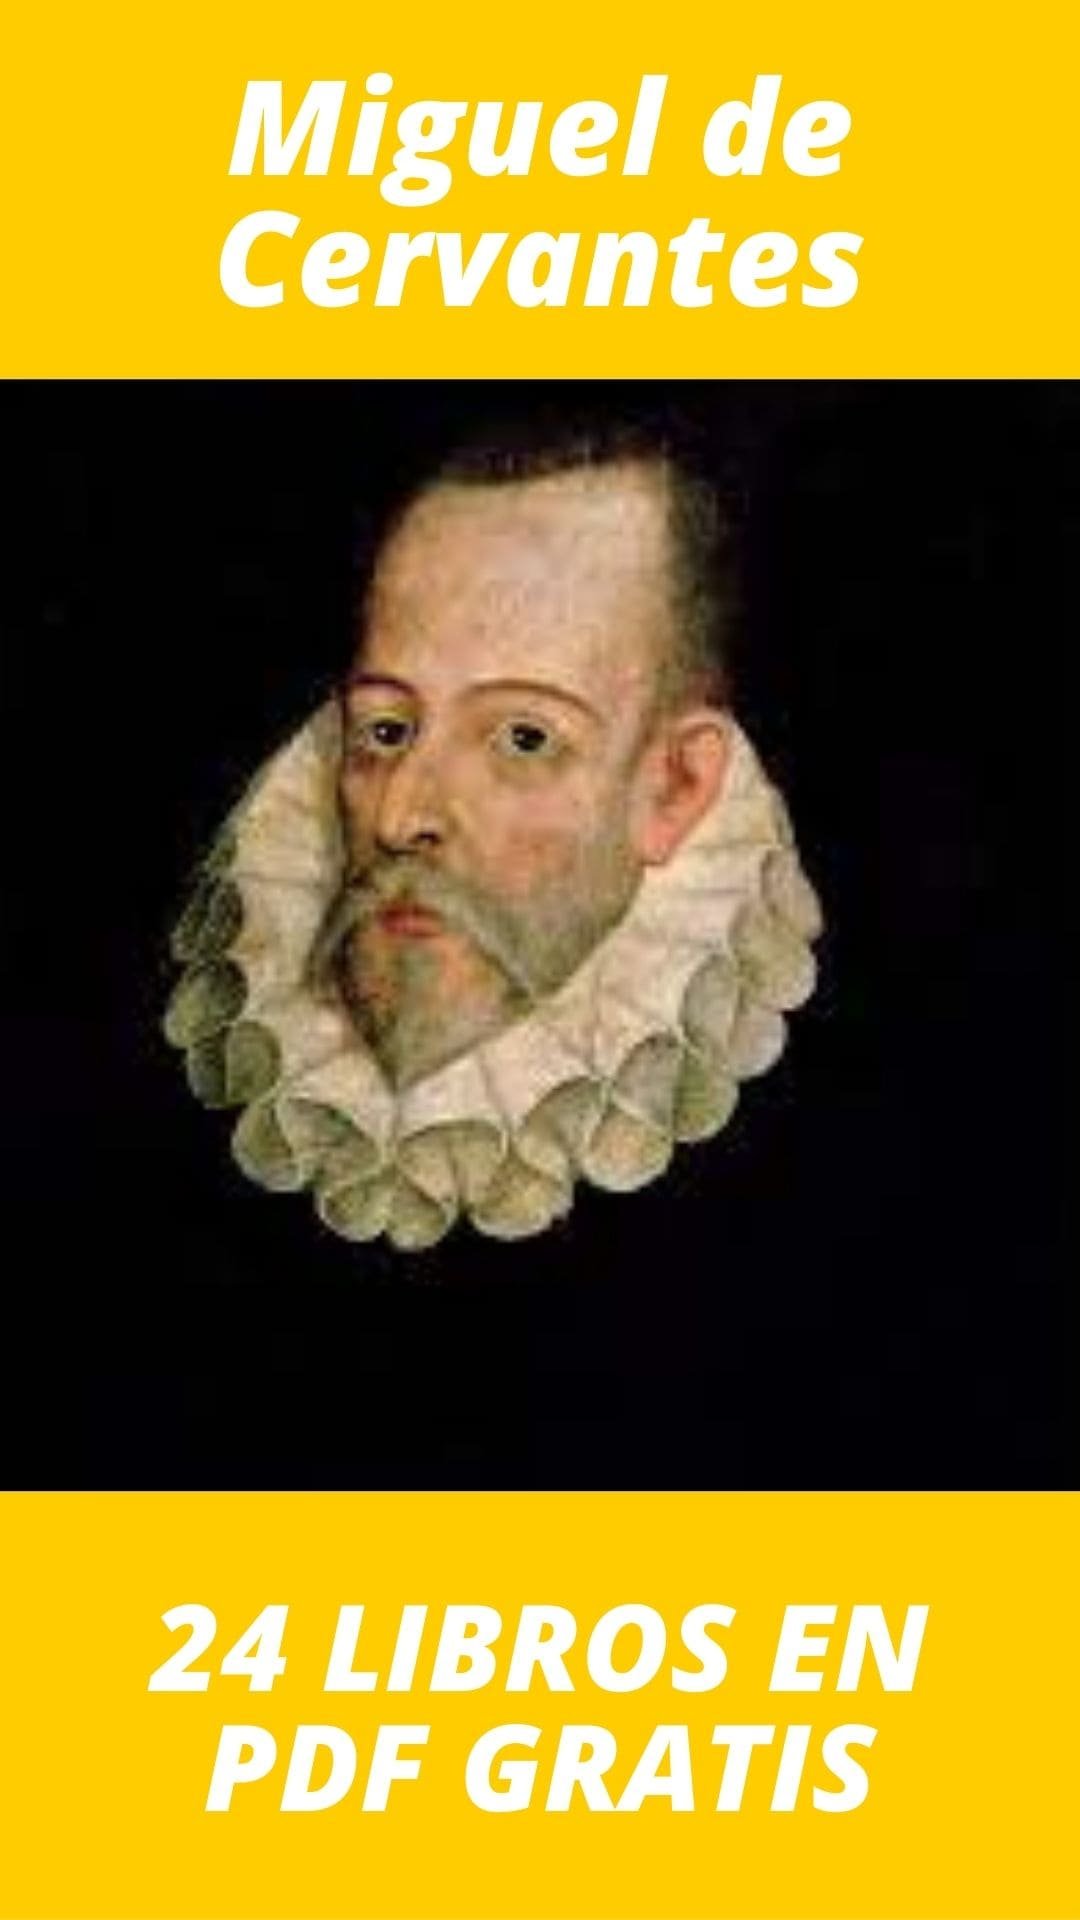 Libros de Miguel de Cervantes gratis en pdf